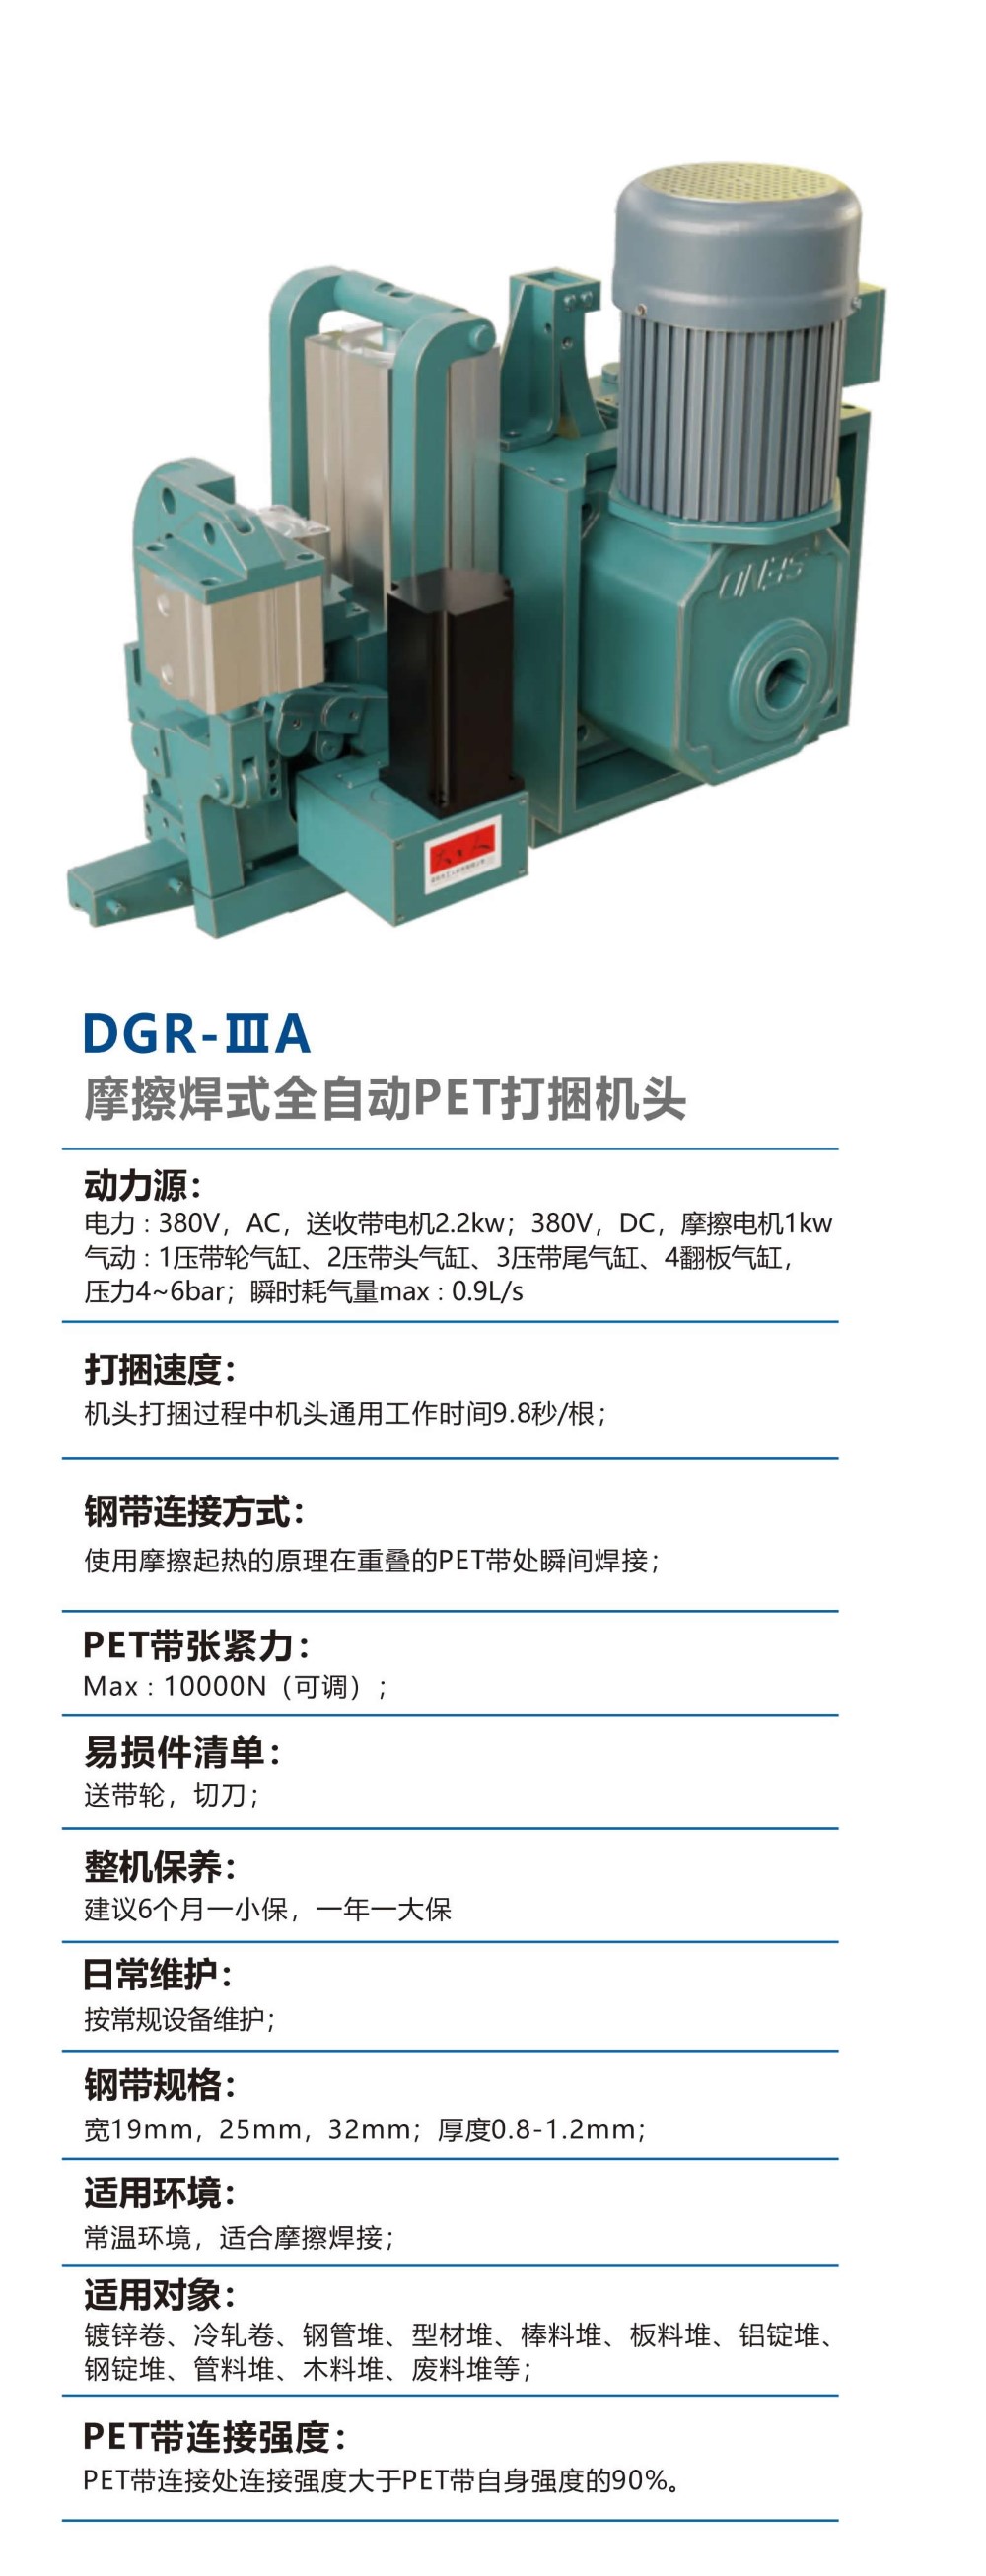 01-全系列自动打捆机头-DGR-IIIA-摩擦焊式全自动PET打捆机头